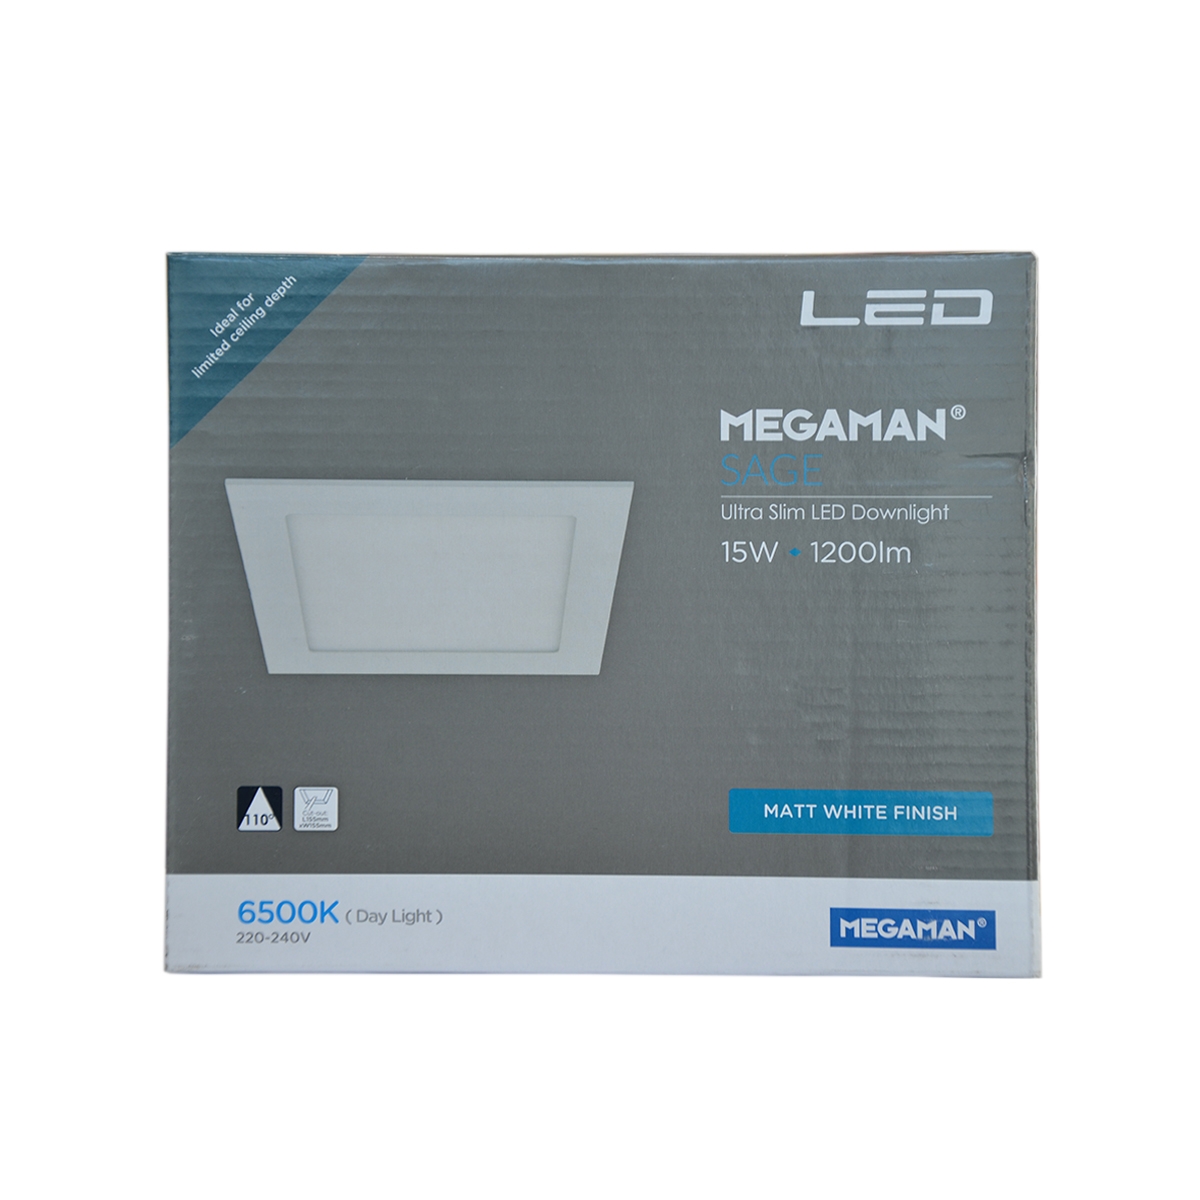 شركة ميجامان - إضاءة سقفية إلى الأسفل - موفرة للطاقة - اللون أبيض ساطع FDL72200v0-EX-15W-6500K